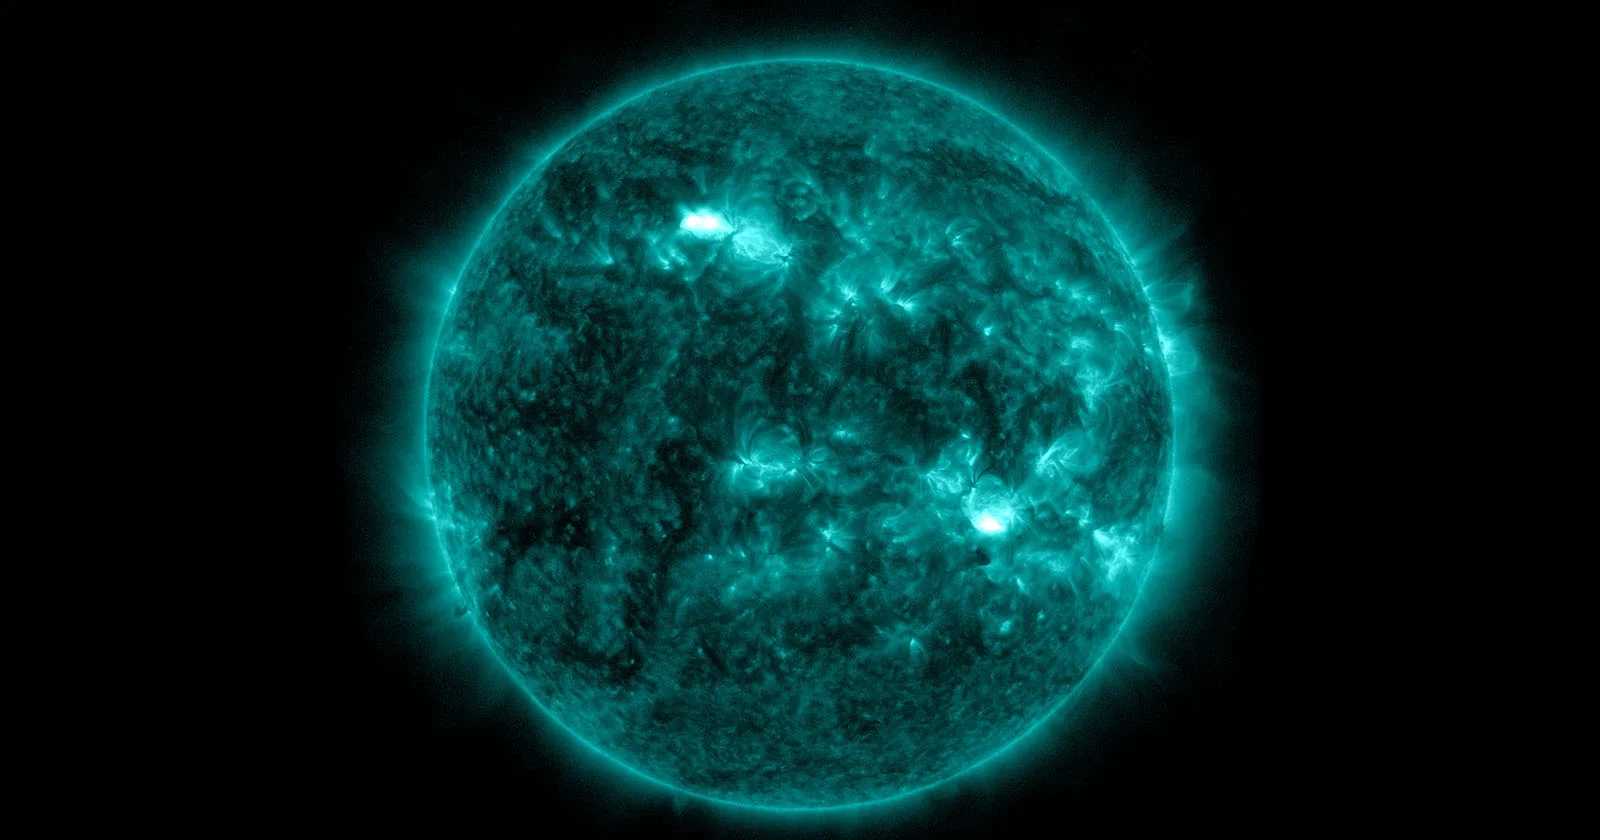 Обсерватория солнечной динамики зафиксировала чрезвычайно редкое событие – симпатическую вспышку на Солнце